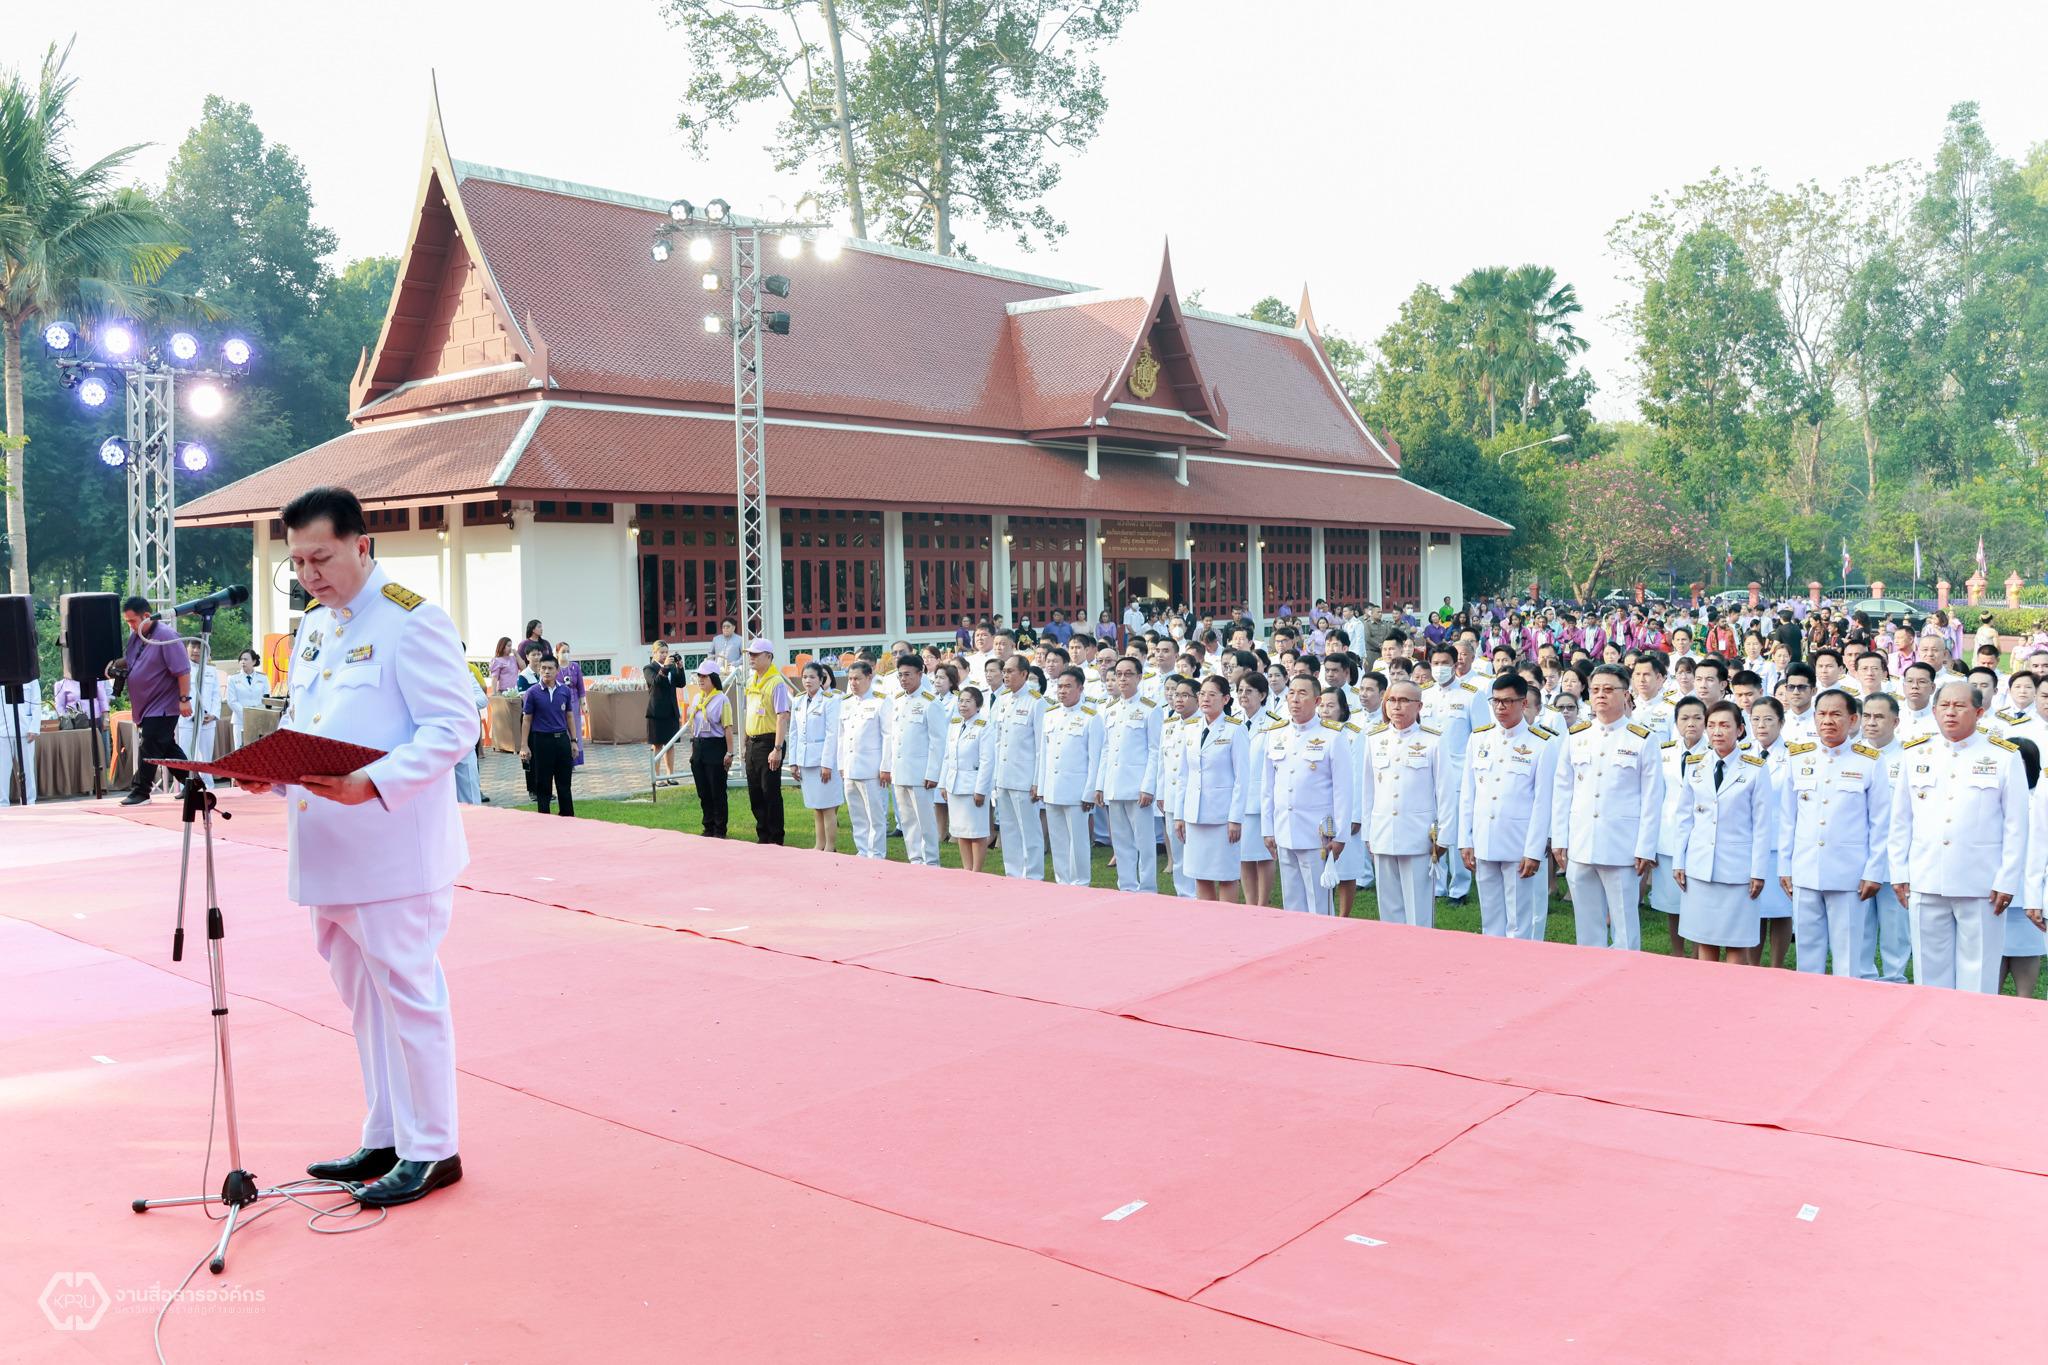 7. โครงการวันอนุรักษ์มรดกไทย เพื่อเฉลิมพระเกียรติสมเด็จพระกนิษฐาธิราชเจ้า กรมสมเด็จพระเทพรัตนราชสุดา ฯ สยามบรมราชกุมารี